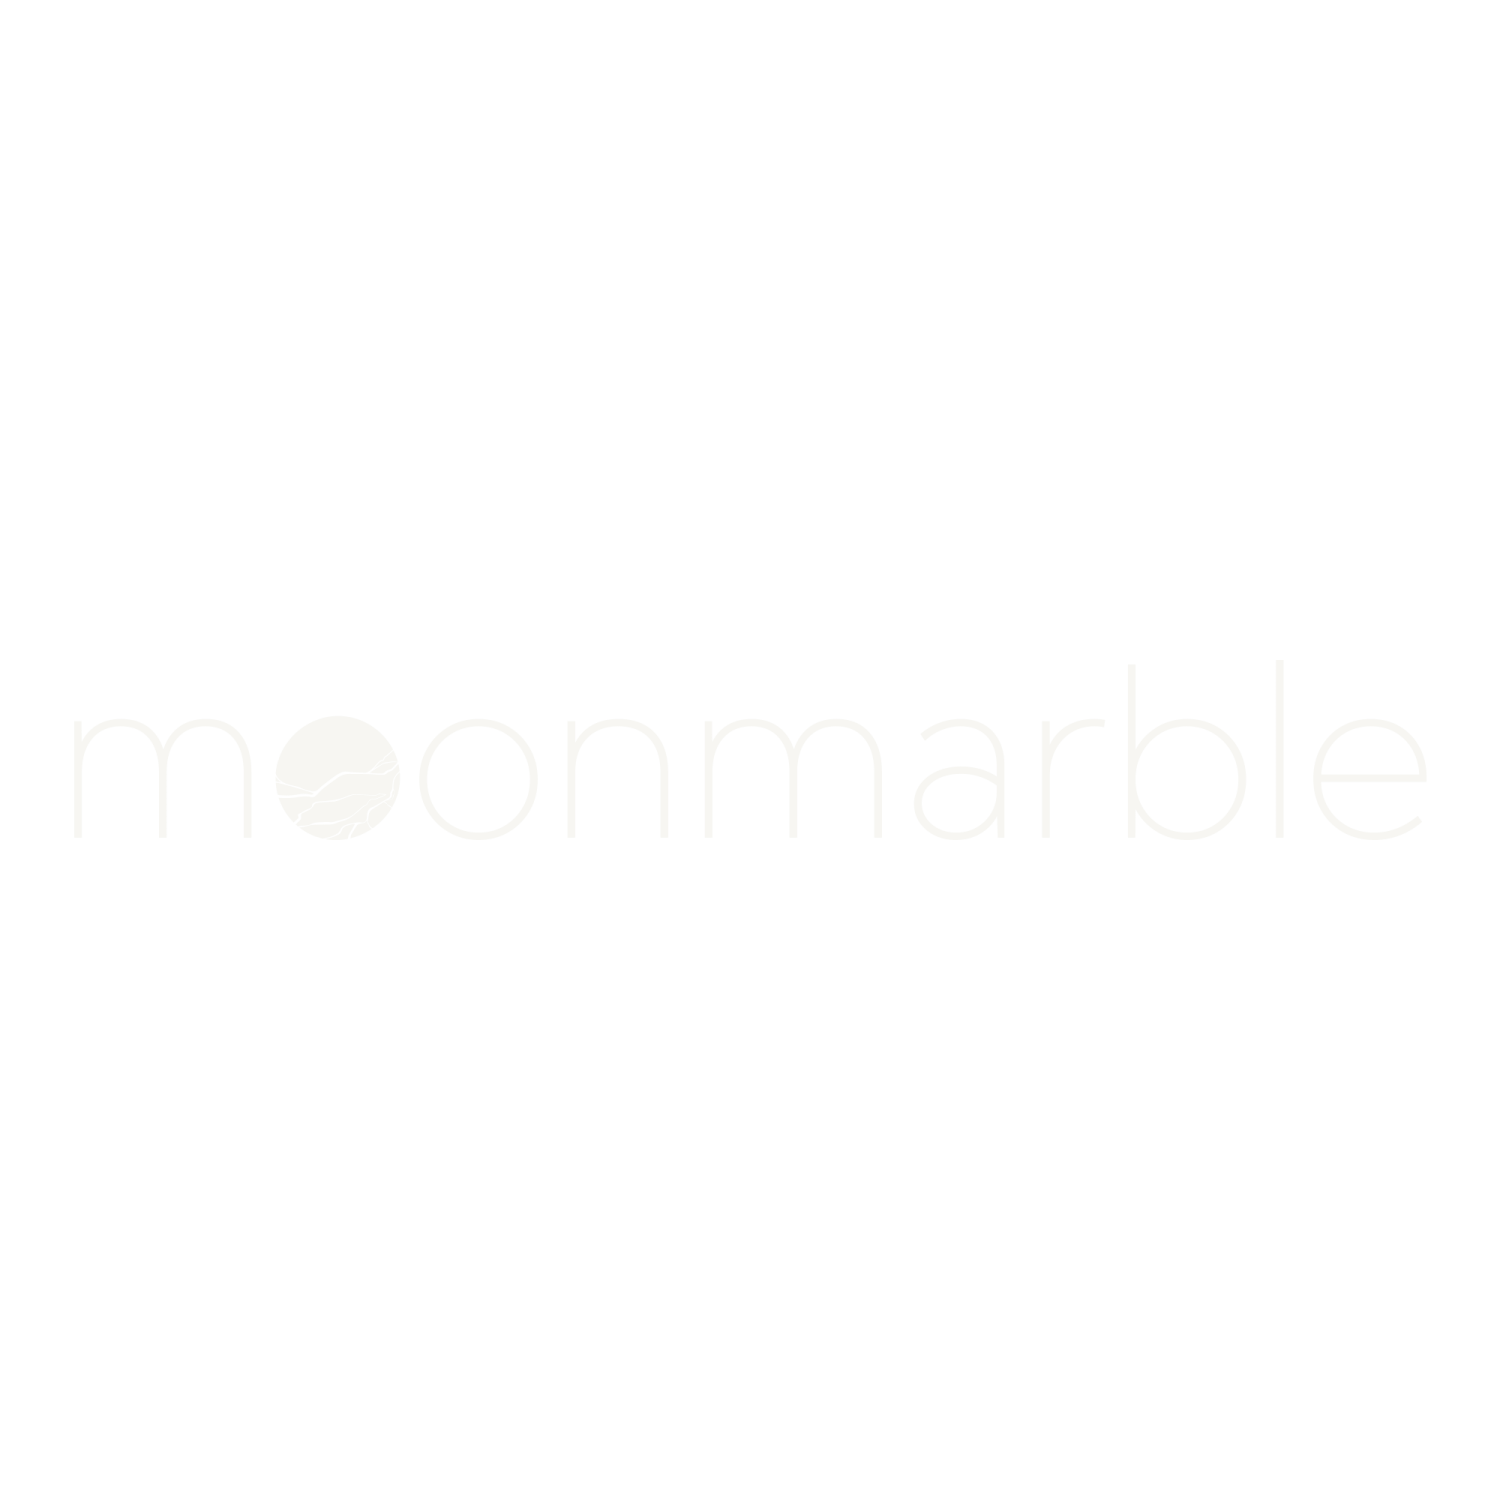 Moonmarble